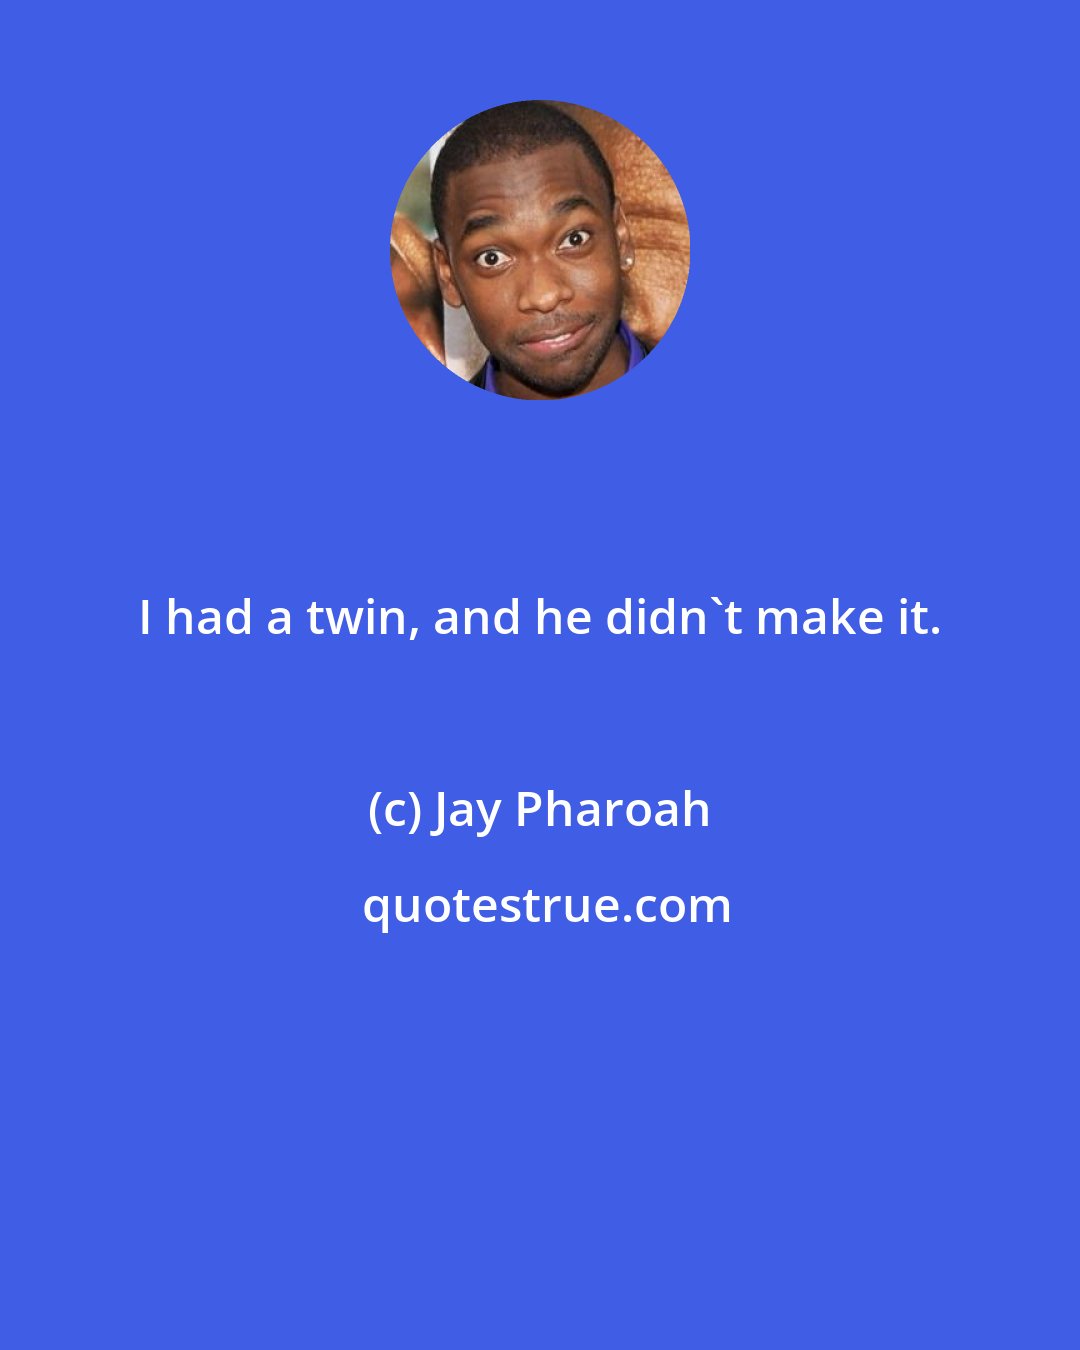 Jay Pharoah: I had a twin, and he didn't make it.